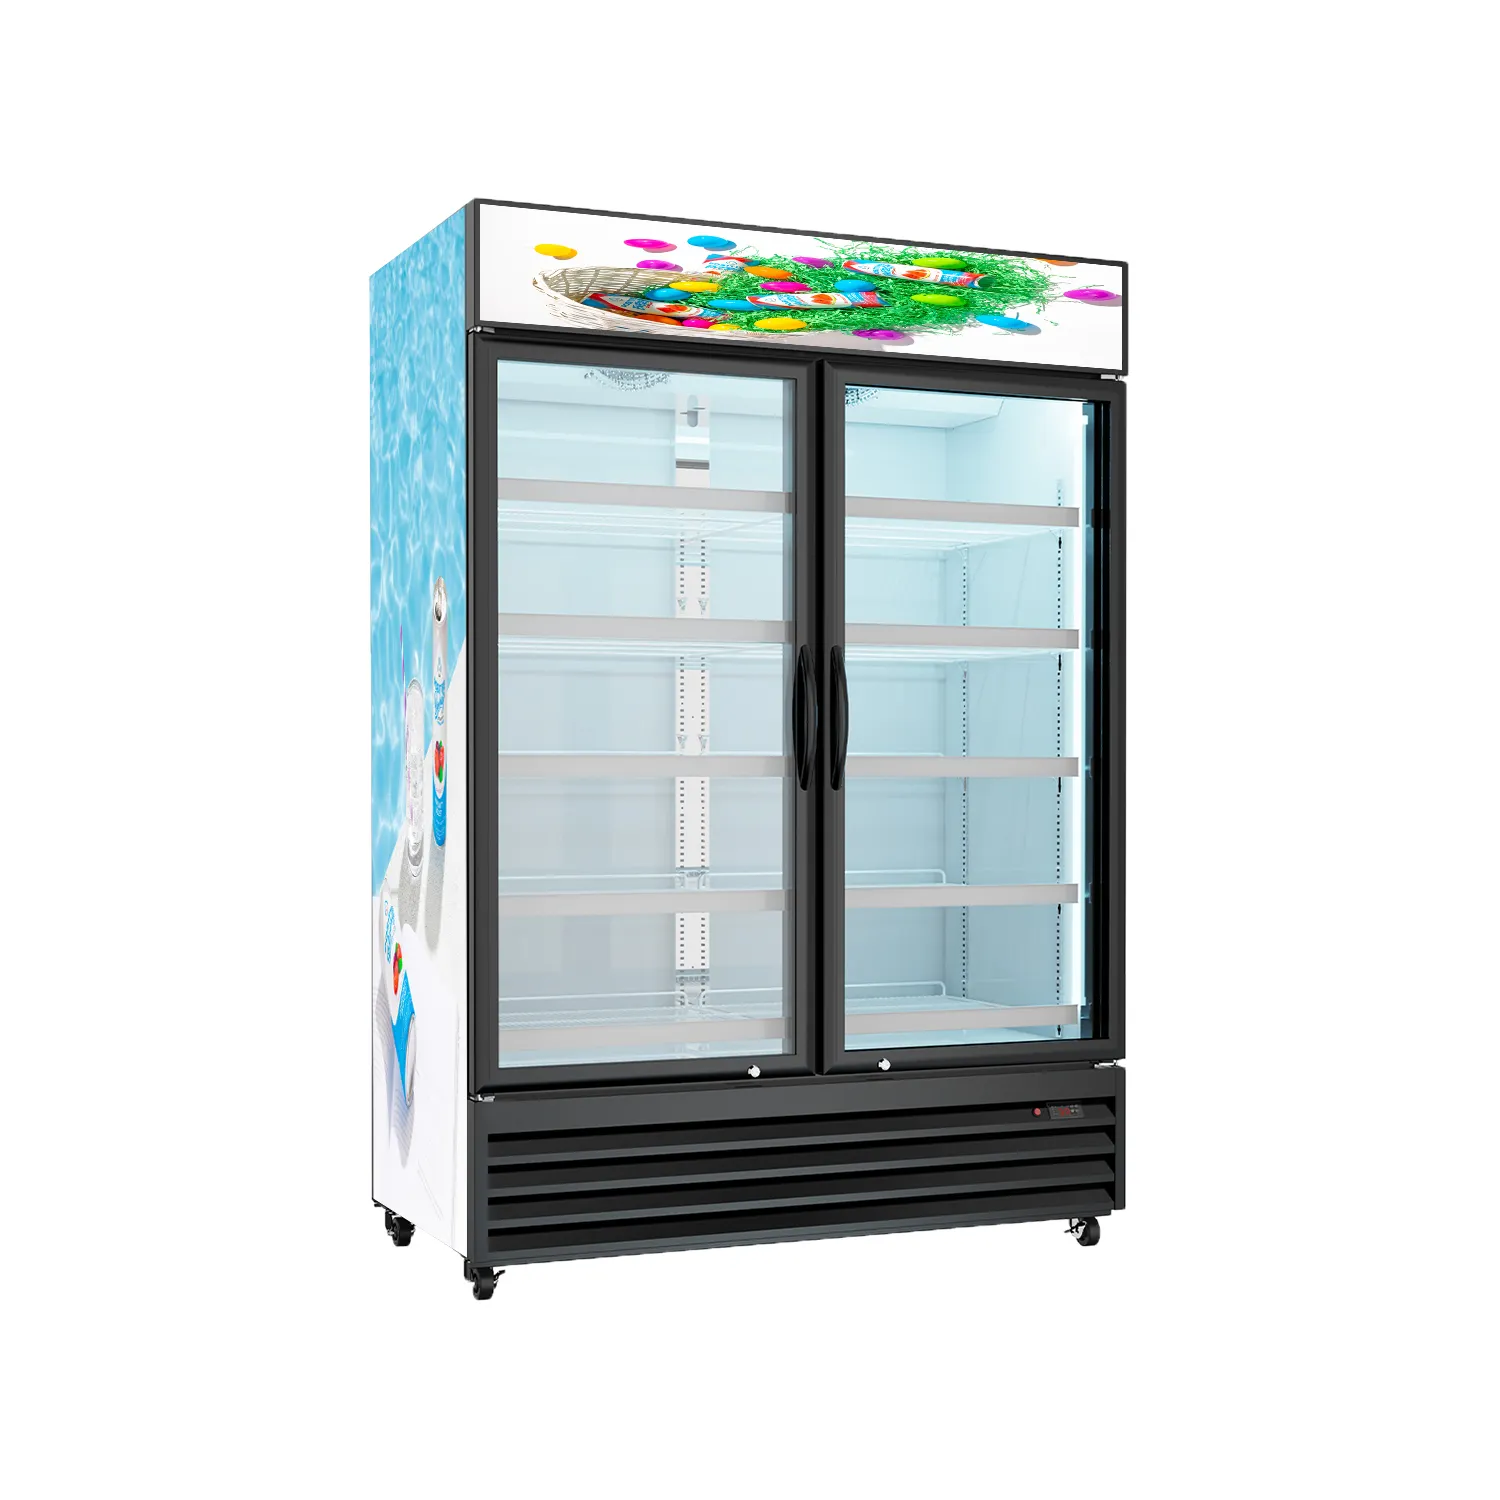 Thương mại năng lượng uống chất lượng cao hiển thị tủ lạnh tủ lạnh để bán